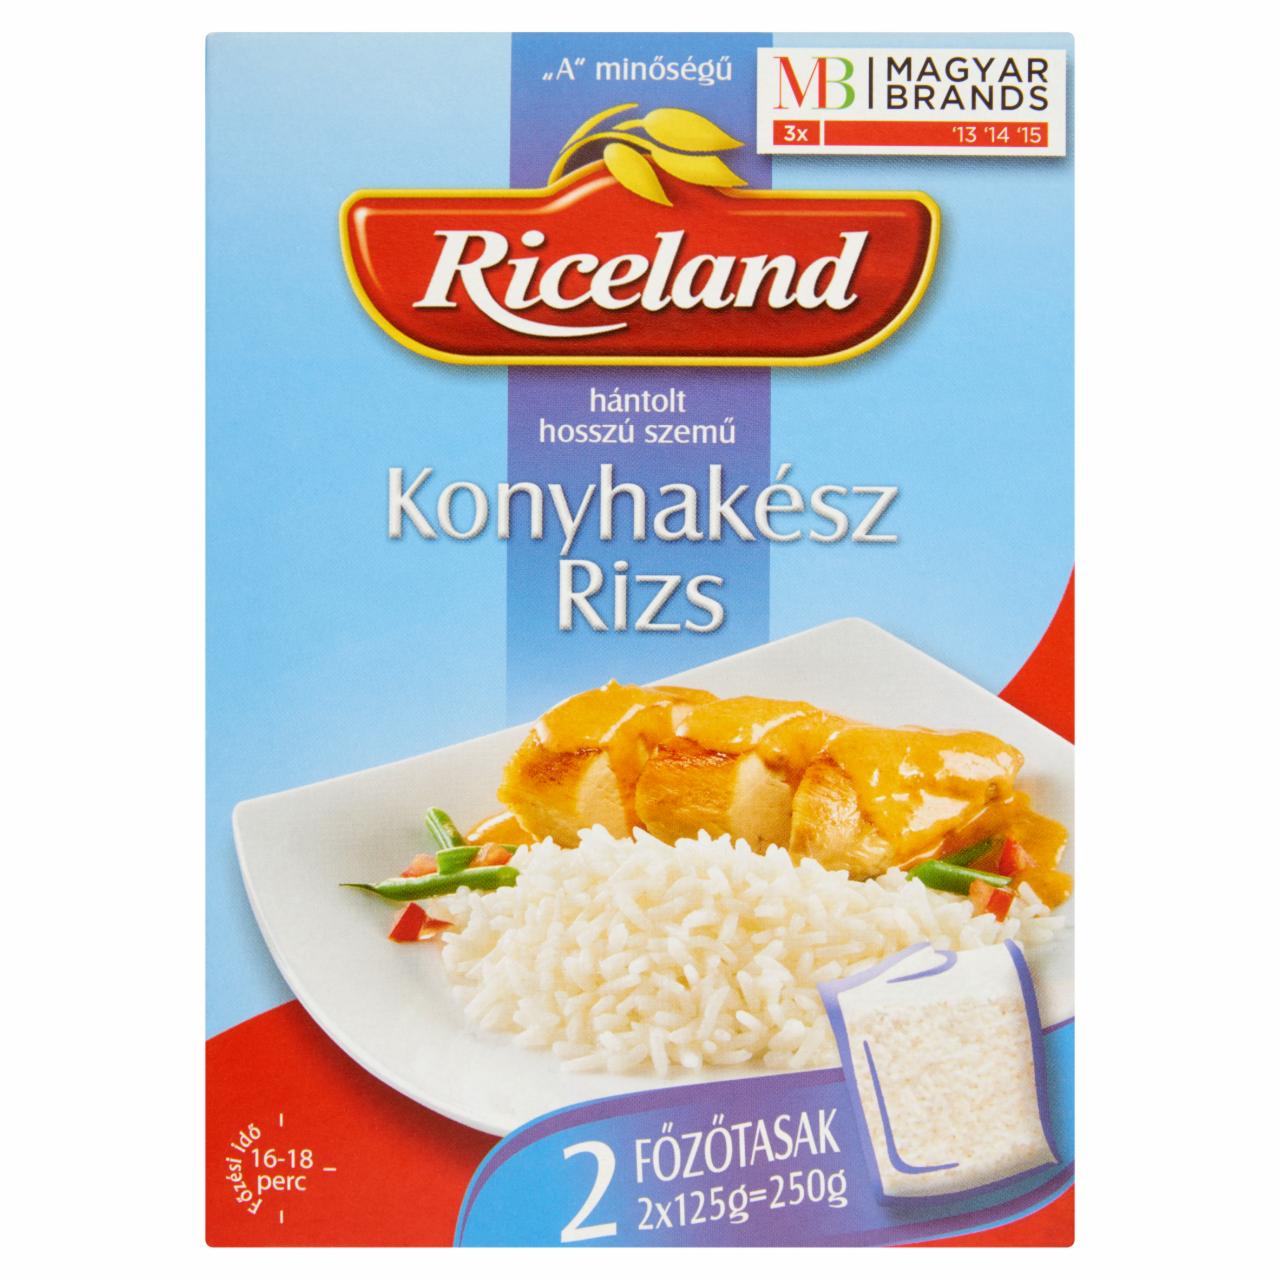 Képek - Riceland 'A' minőségű hántolt, hosszú szemű, konyhakész rizs 2 x 125 g (250 g)